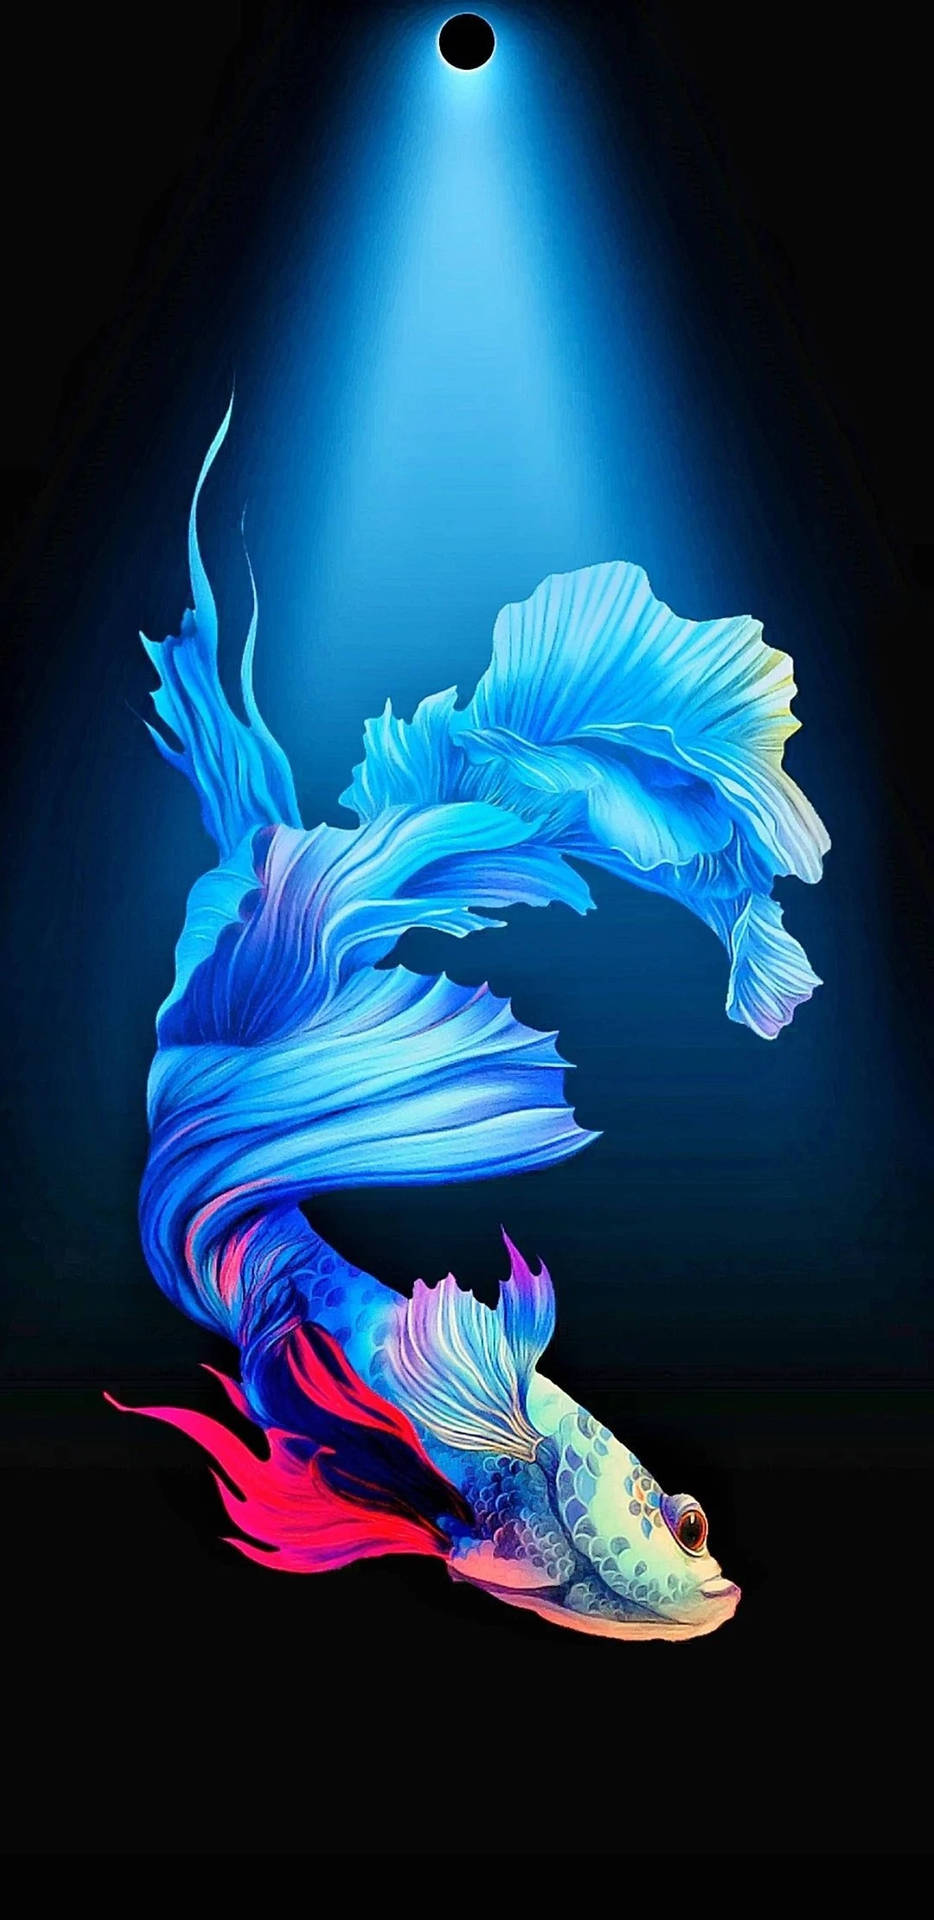 iPhoneXpapers.com | iPhone X wallpaper | oa52-deep-dive-sea-fish -ocean-water-nature